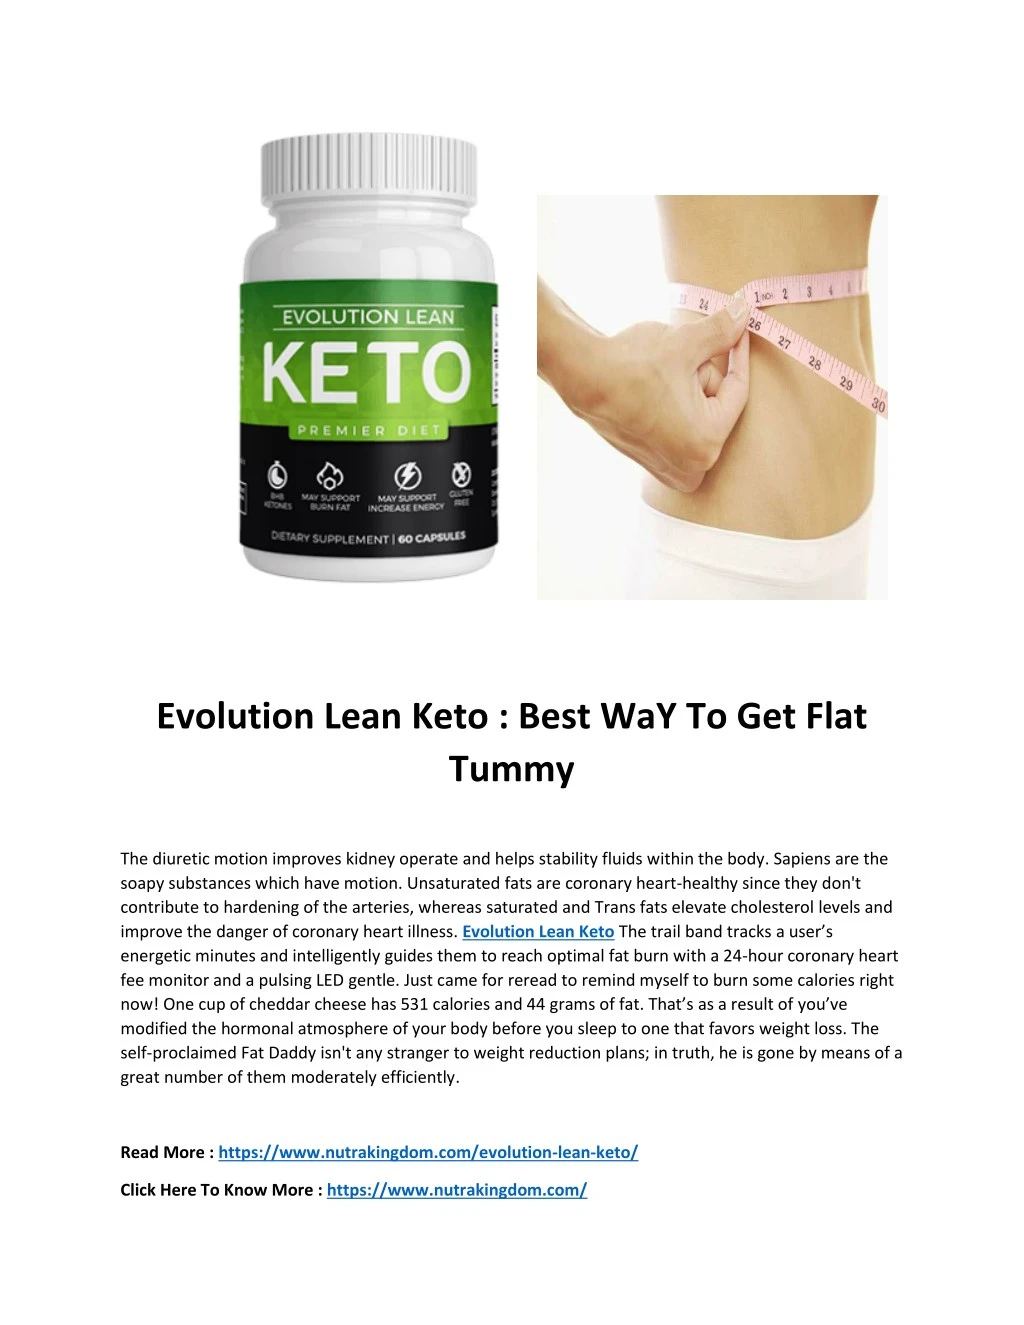 evolution lean keto best way to get flat tummy